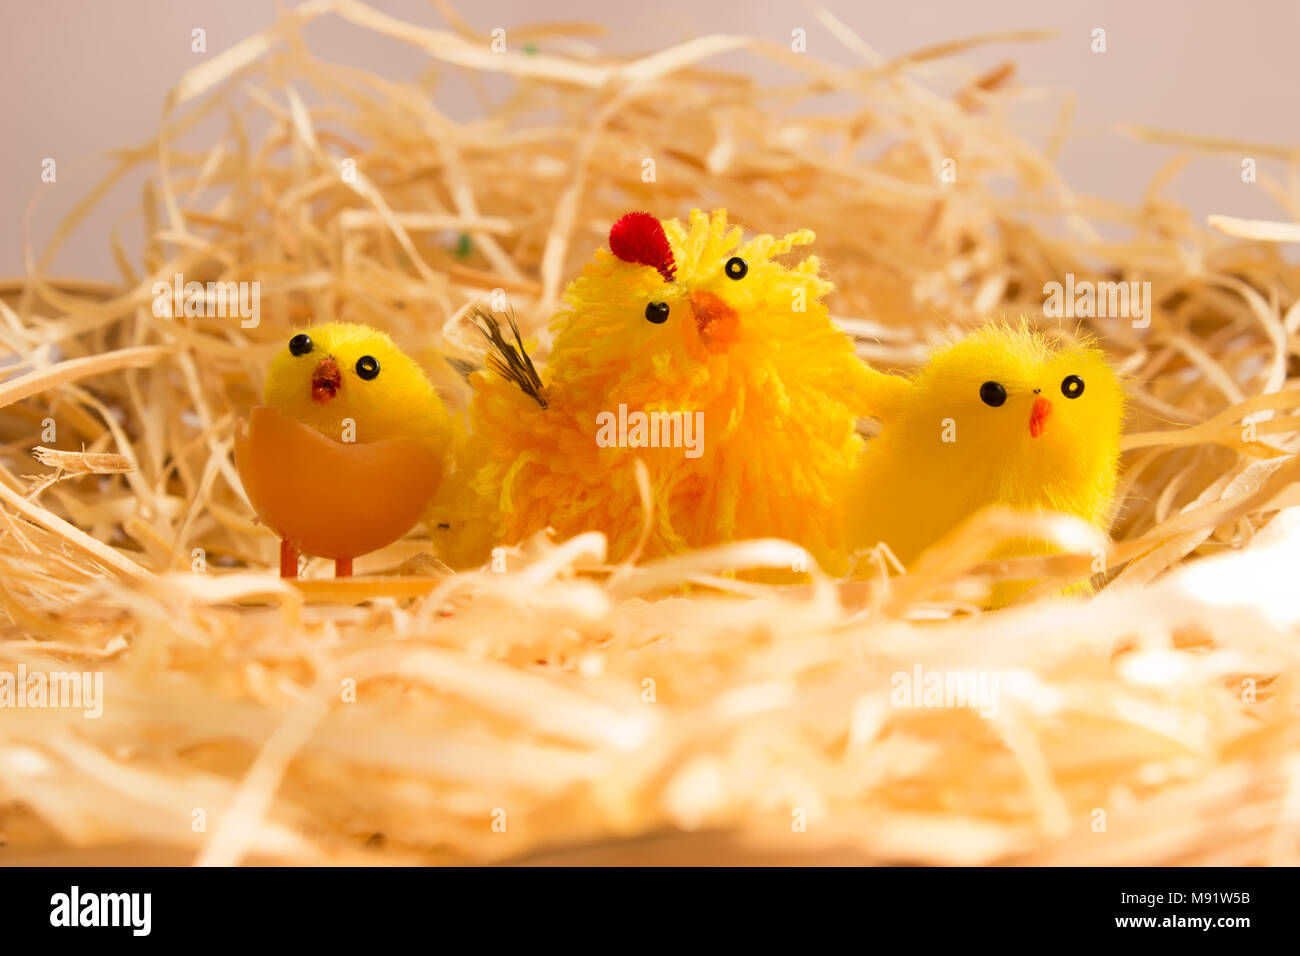 Decorazioni di pasqua. In la covata sono giallo giocattolo di polli e galline. Foto Stock